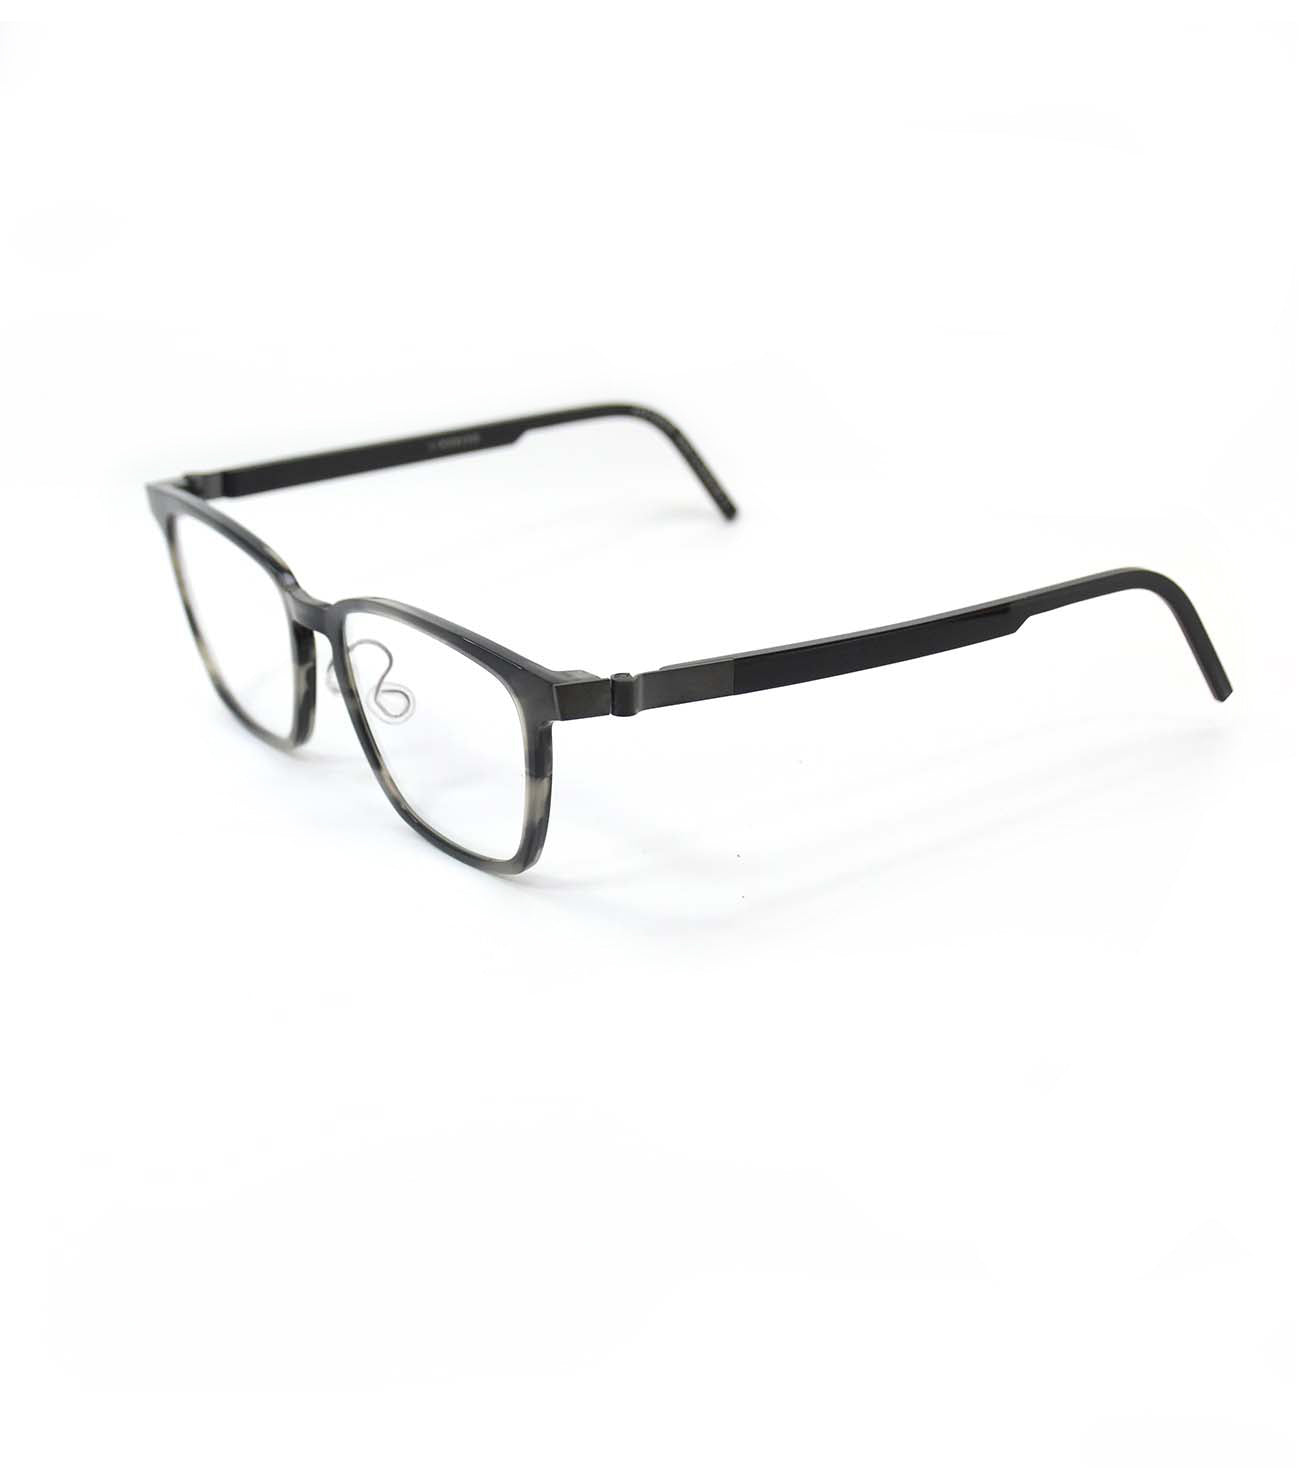 Lindberg Acetanium145 5318.311 K199U9 Havana Black Eyeglasses